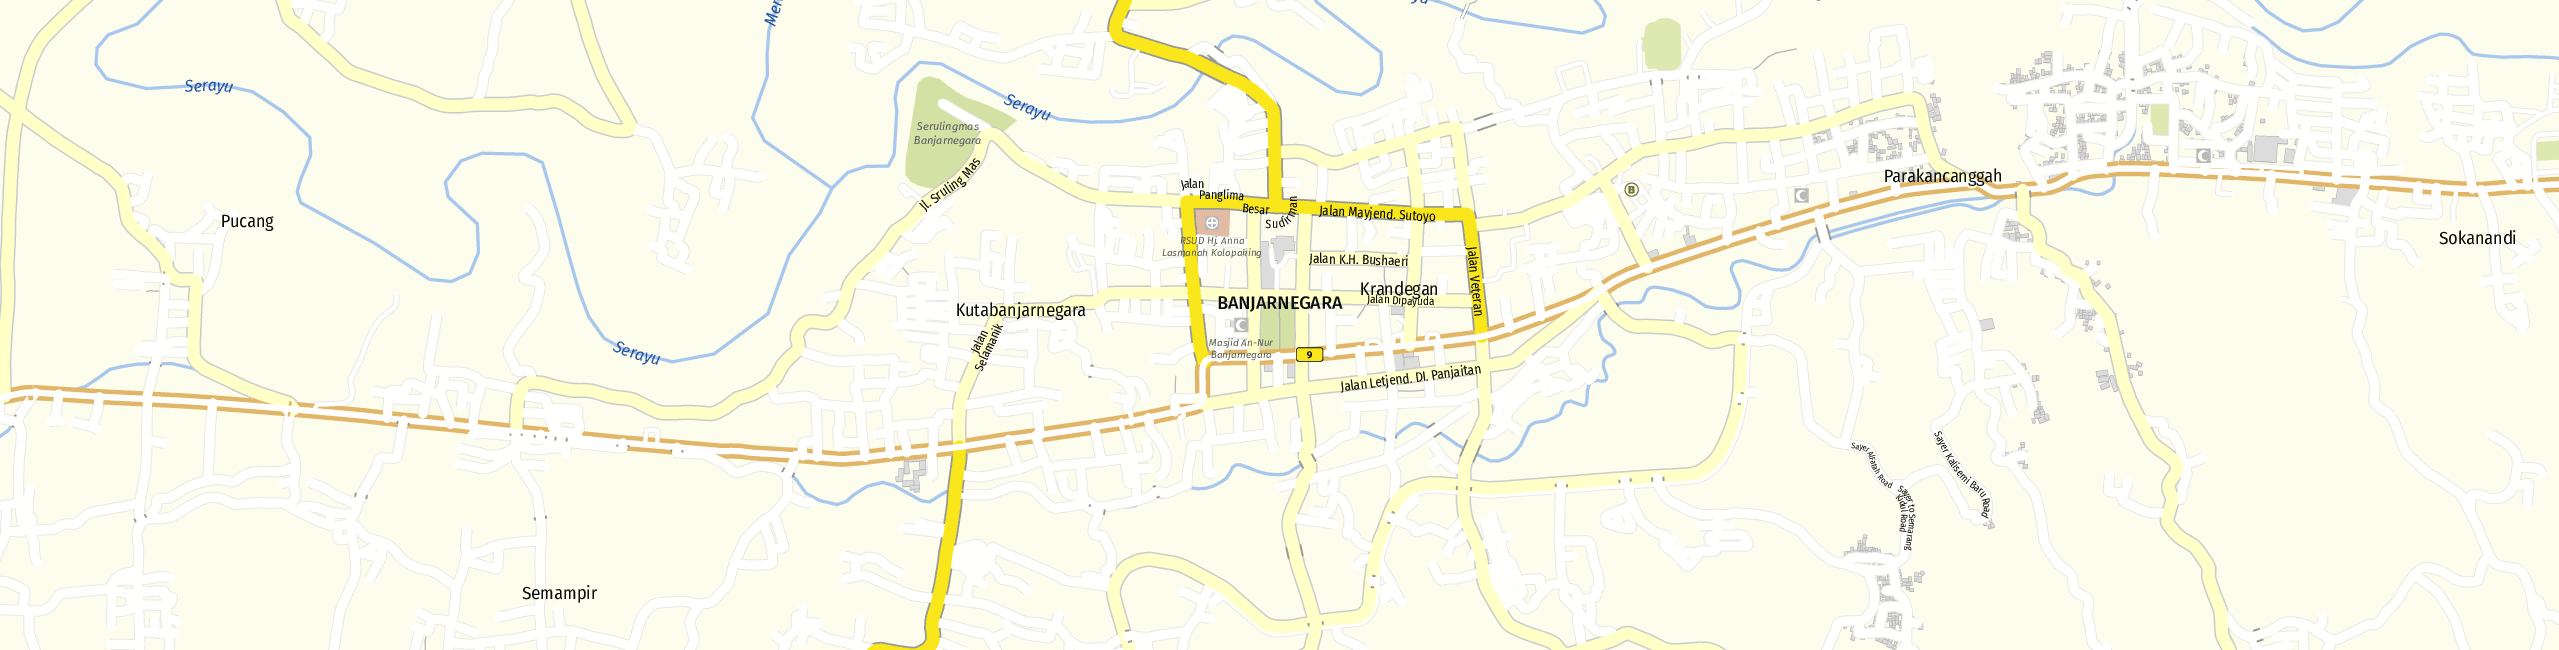 Stadtplan Banjarnegara zum Downloaden.